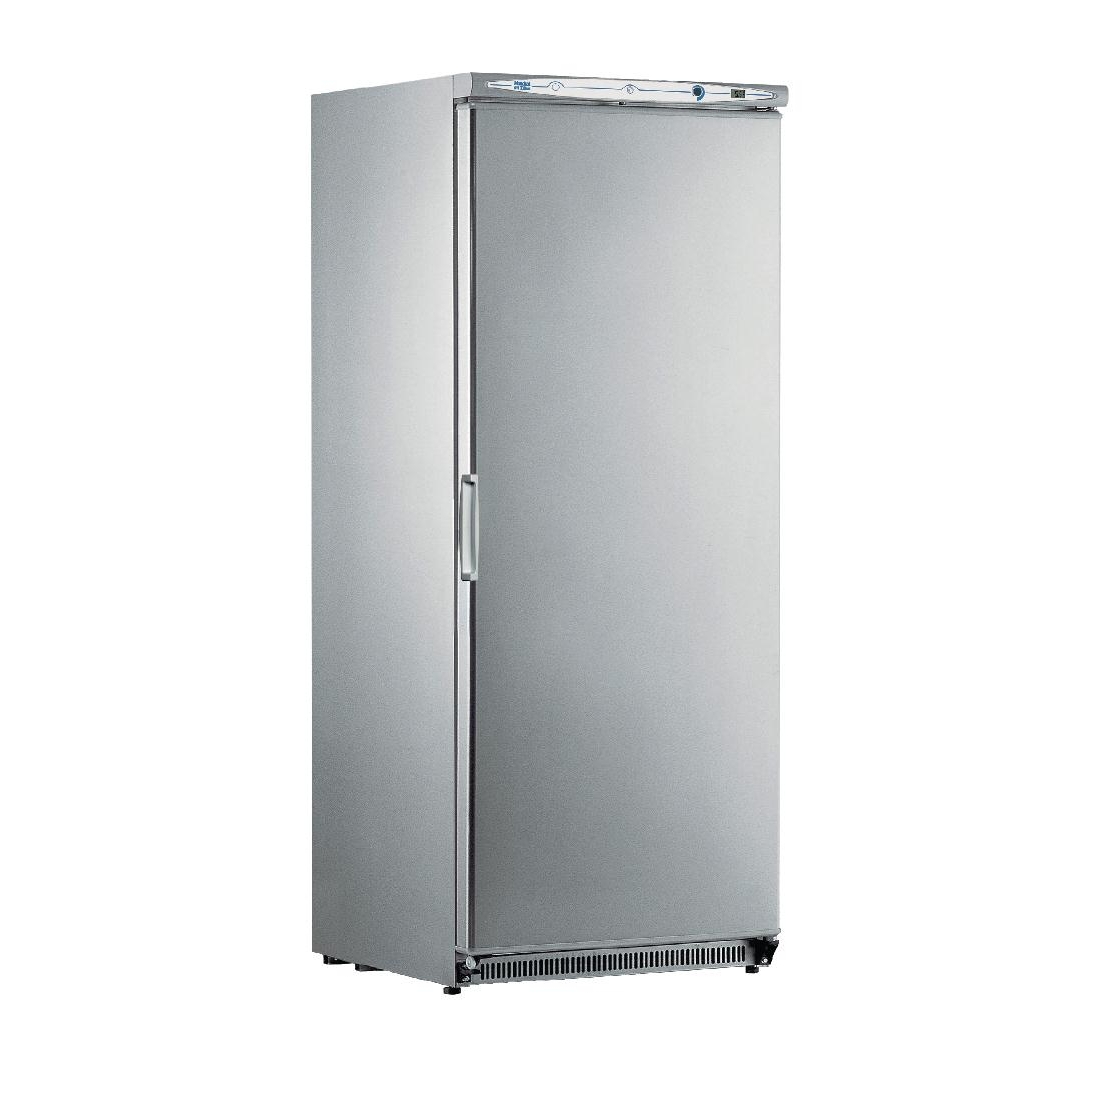 Шкаф холодильный 1 дверь. Морозильный шкаф Mondial Elite. Холодильный шкаф ШХ-1,40к. Kic PVX 60 «mondialelite шкаф холодильный. Холодильный шкаф ШХ-370м.